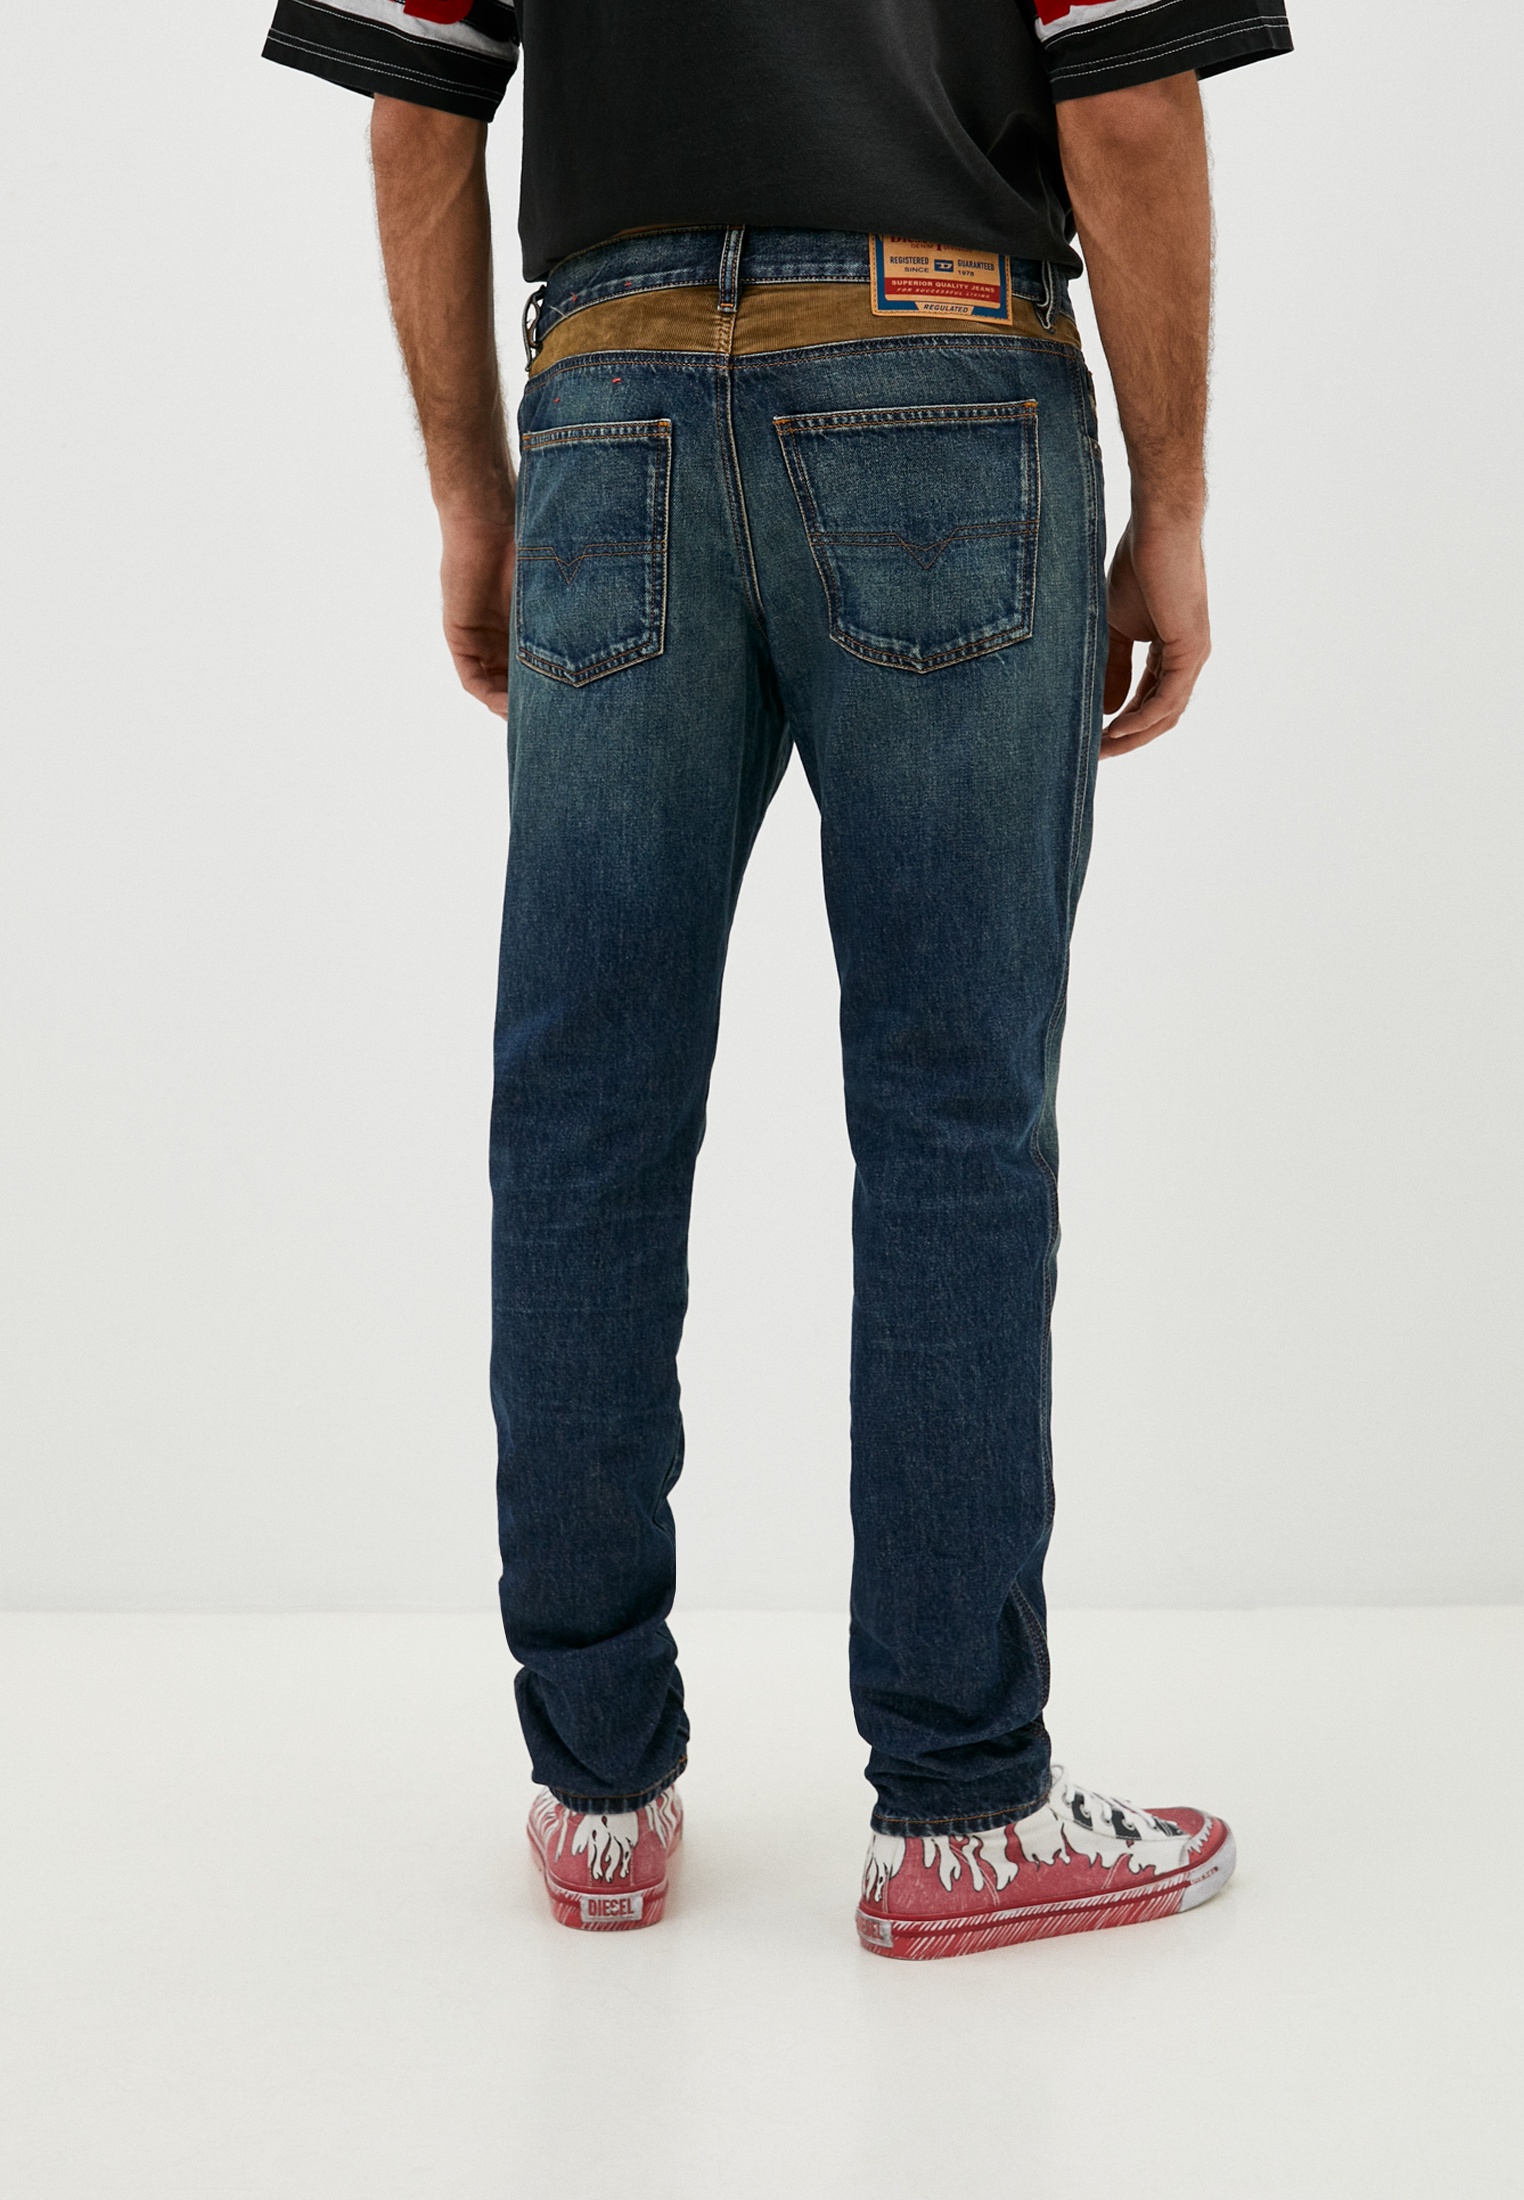 Мужские зауженные джинсы Diesel (Дизель) A1331509I36: изображение 3